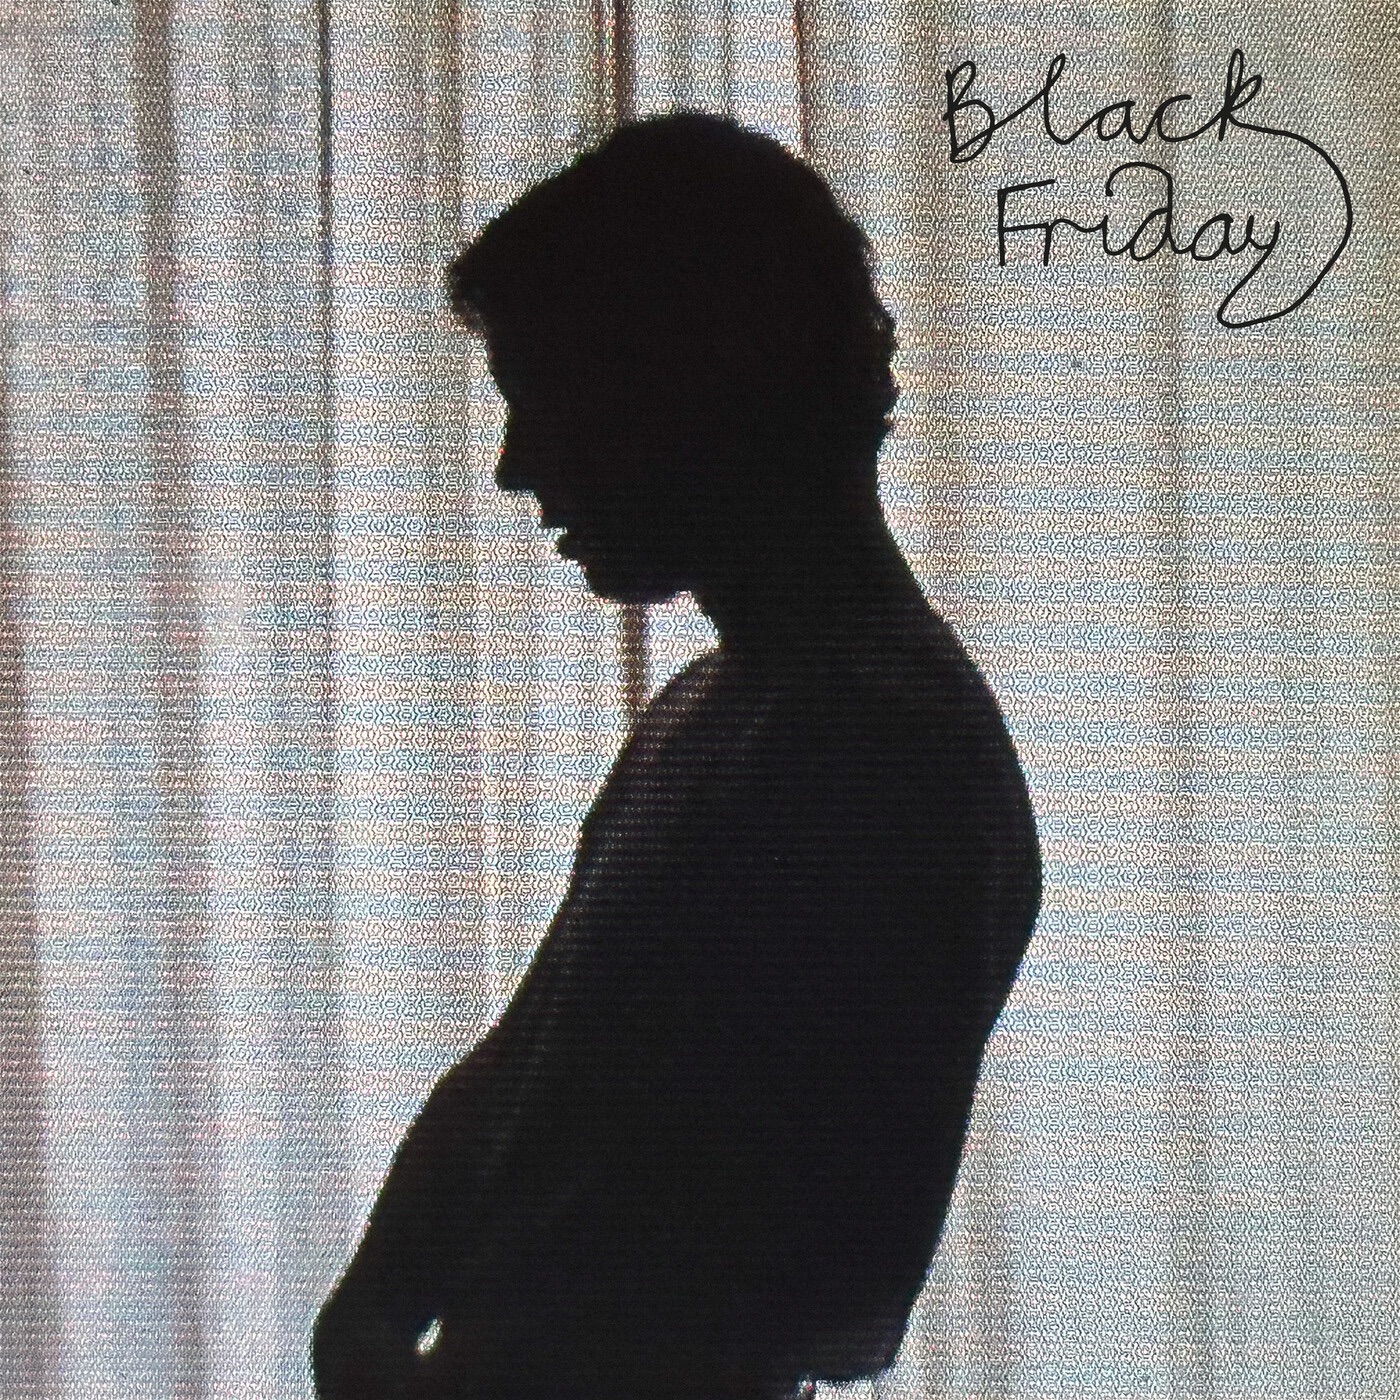 Tom Odell Black Friday cover artwork